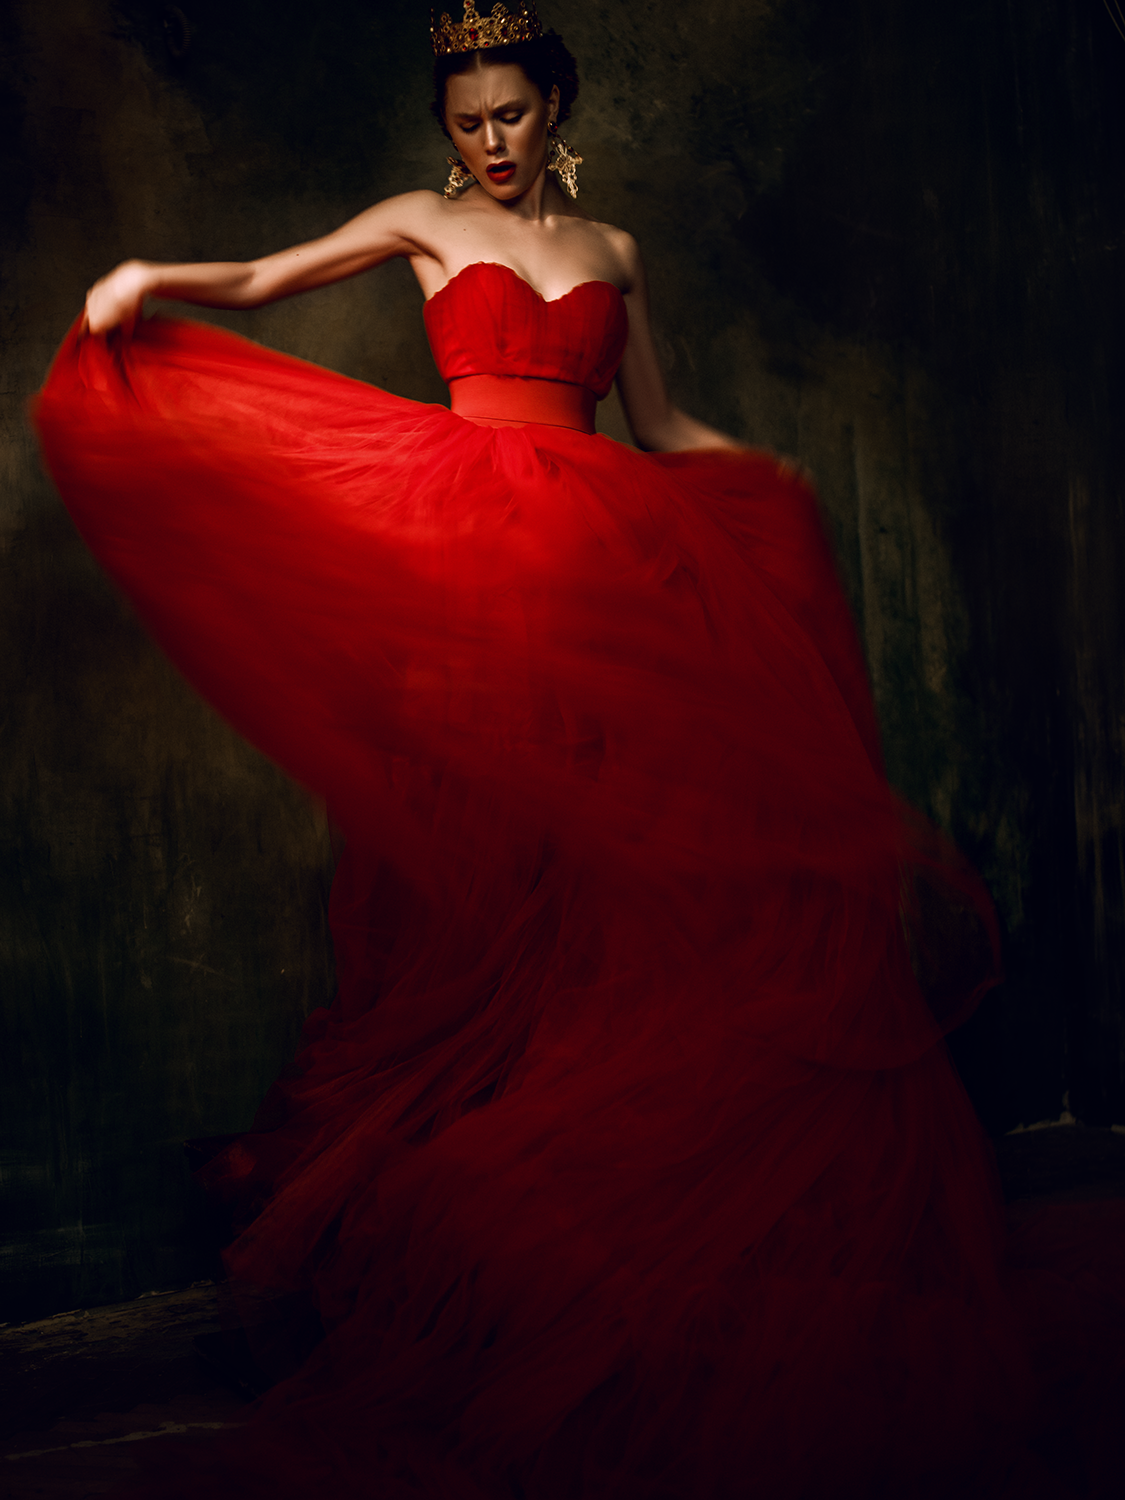 Дениз Байсал в Красном платье. Красивое красное платье. Девушка в Красном. Девушка в платье красивая. Фото девушки в красном платье